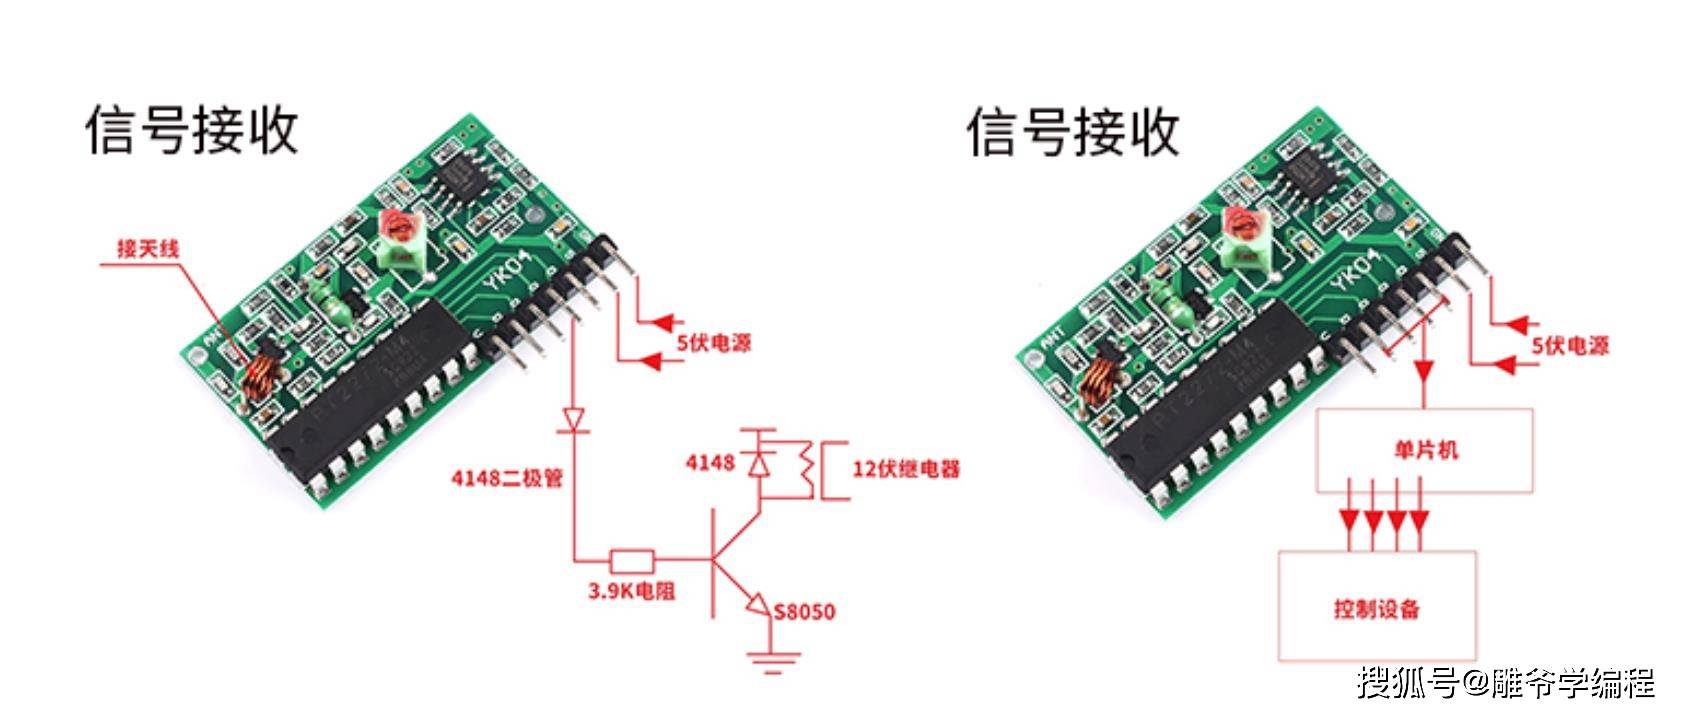 【雕爷学编程】arduino动手做(155)